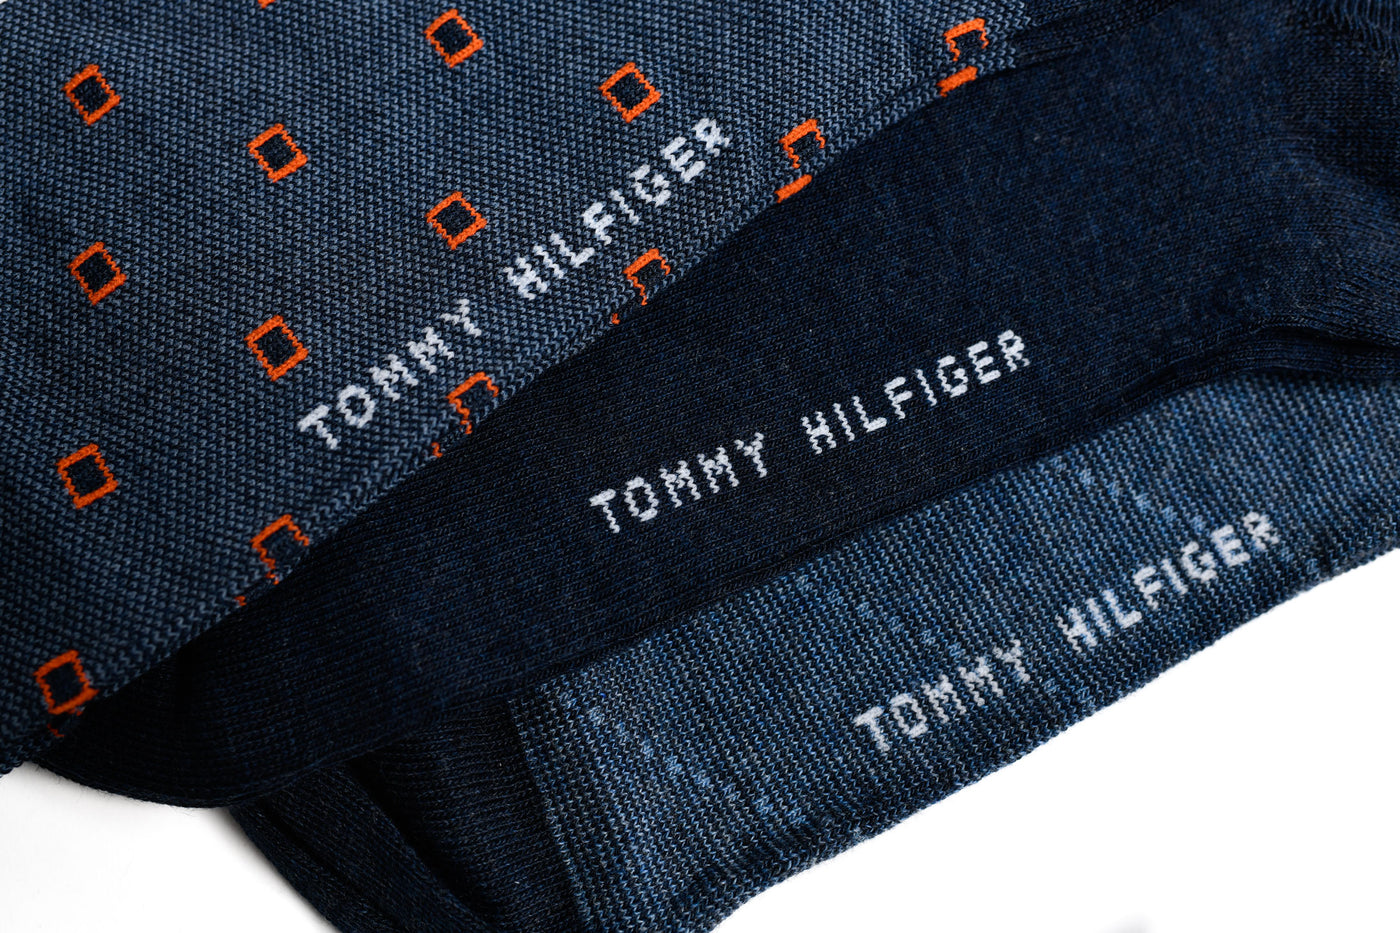 BOX - Tommy Hilfiger Man's Black Socks